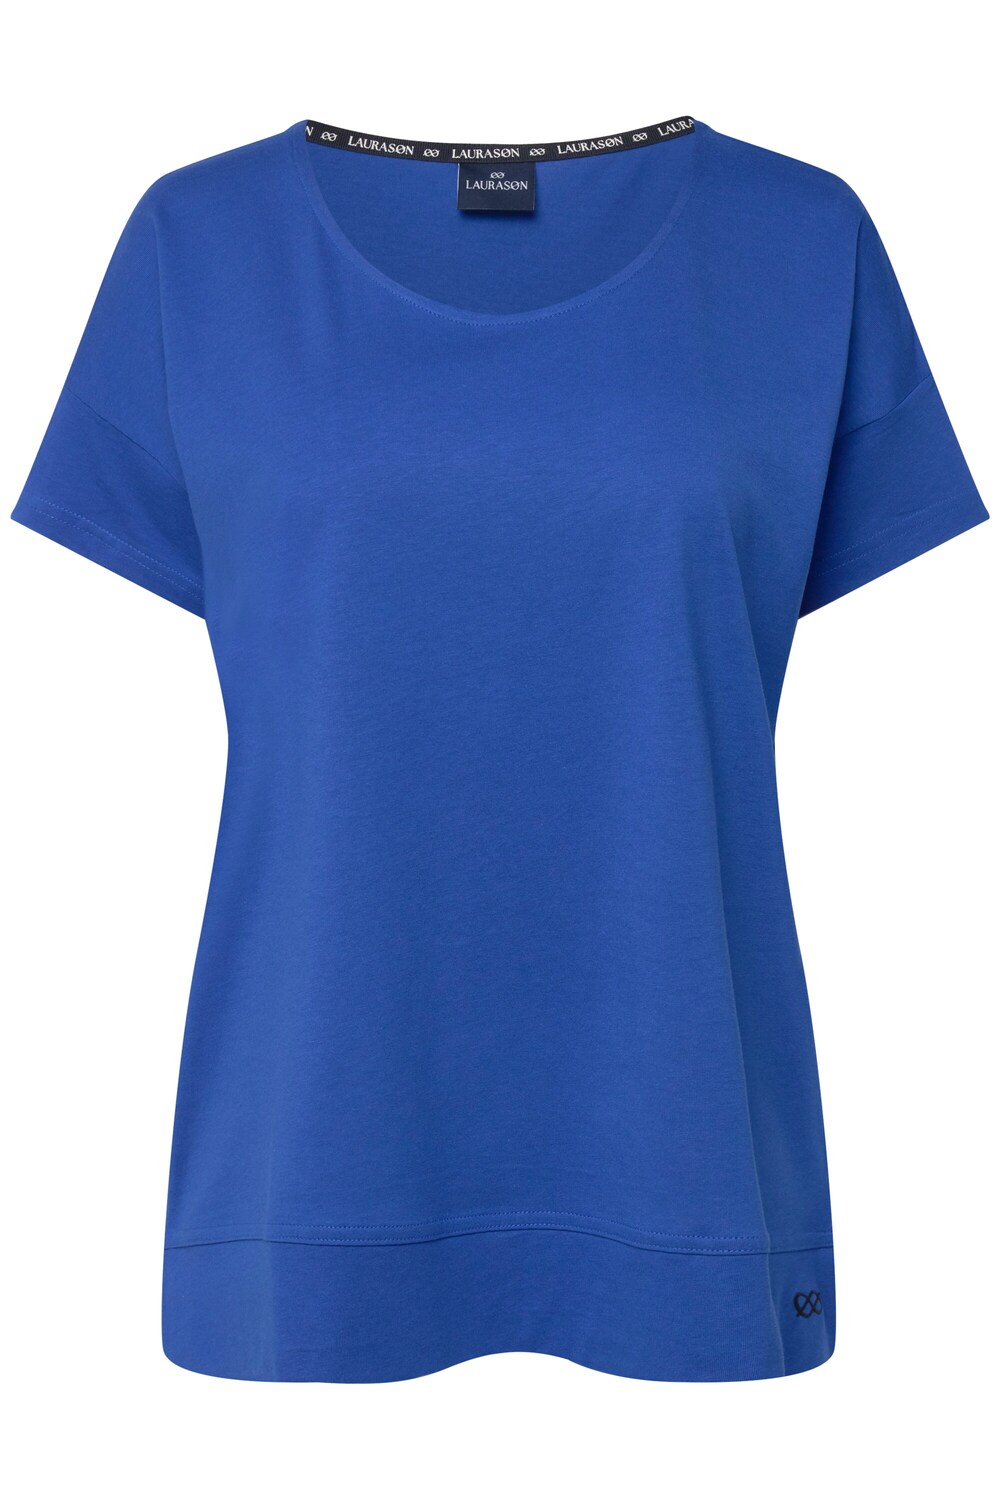 Рубашка LAURASØN, синий кобальт цвет синий кобальт